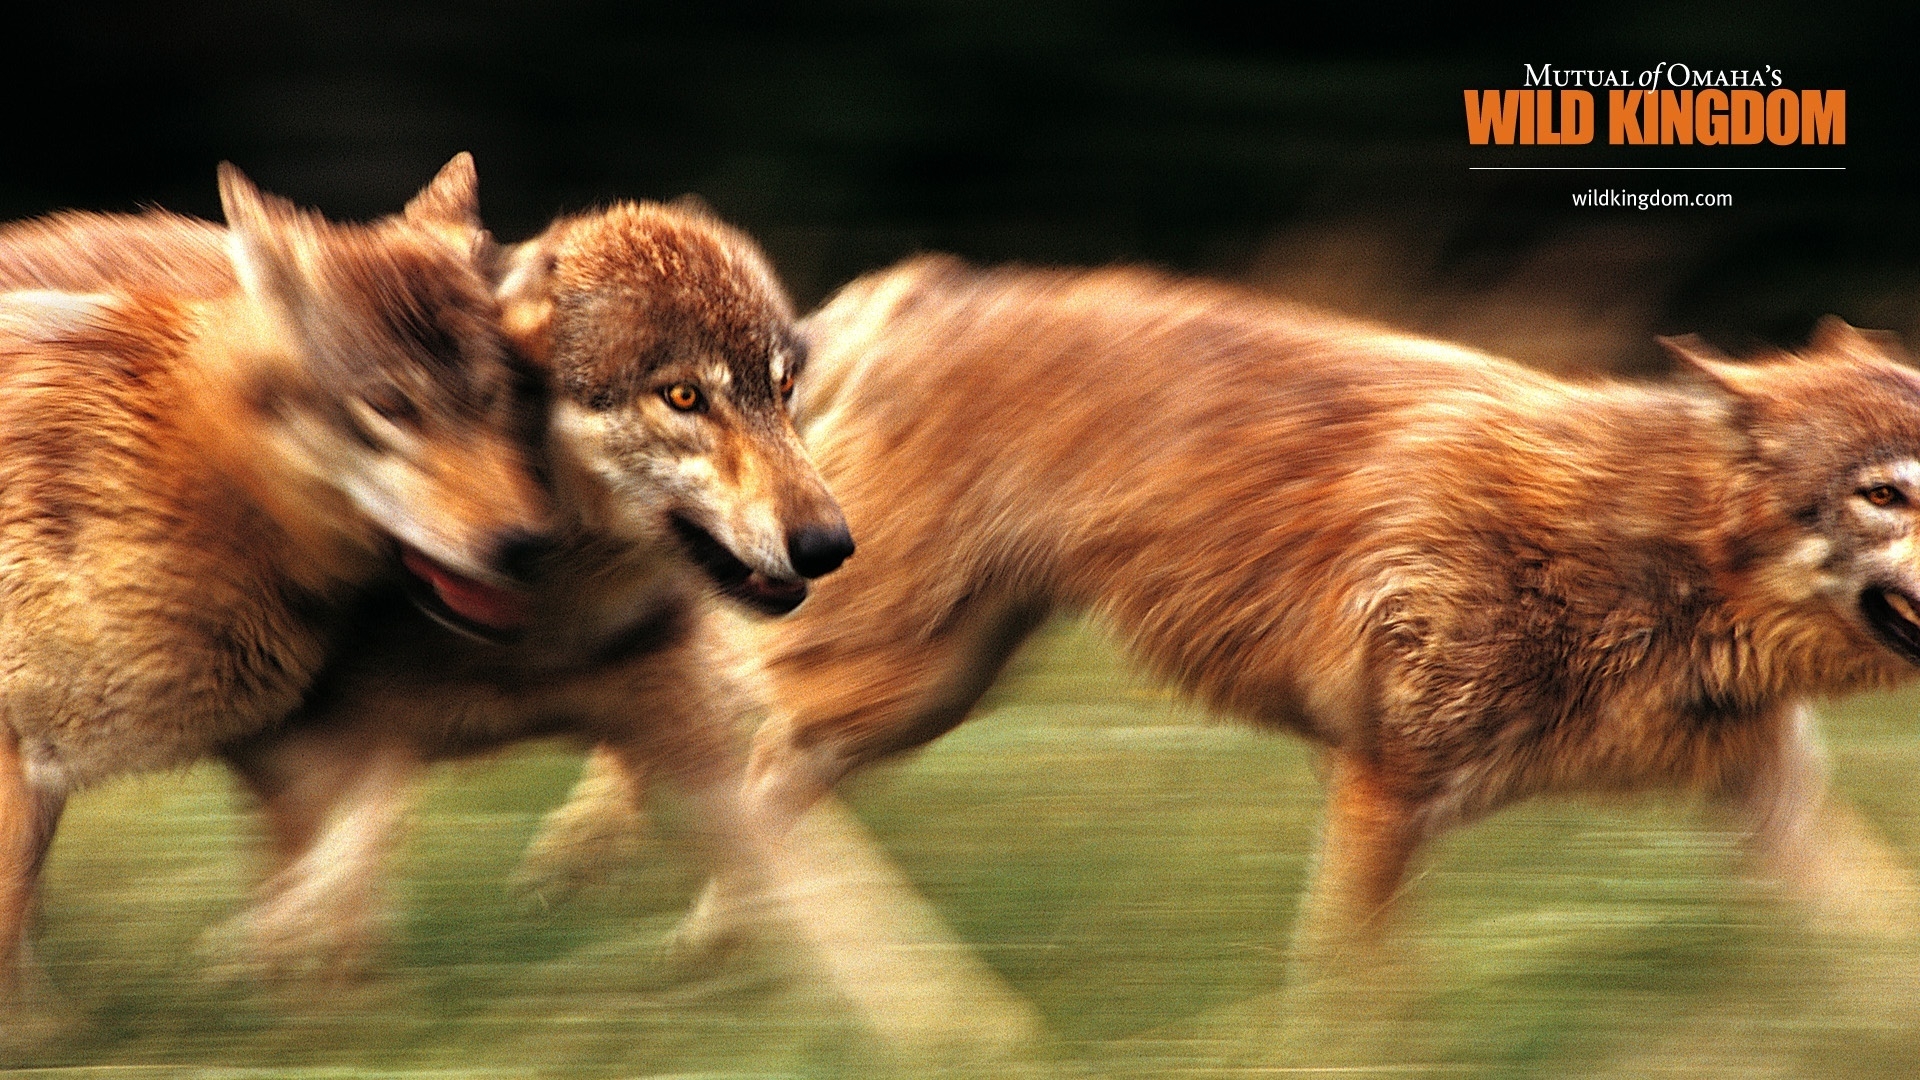 Wolves for 1920 x 1080 HDTV 1080p resolution